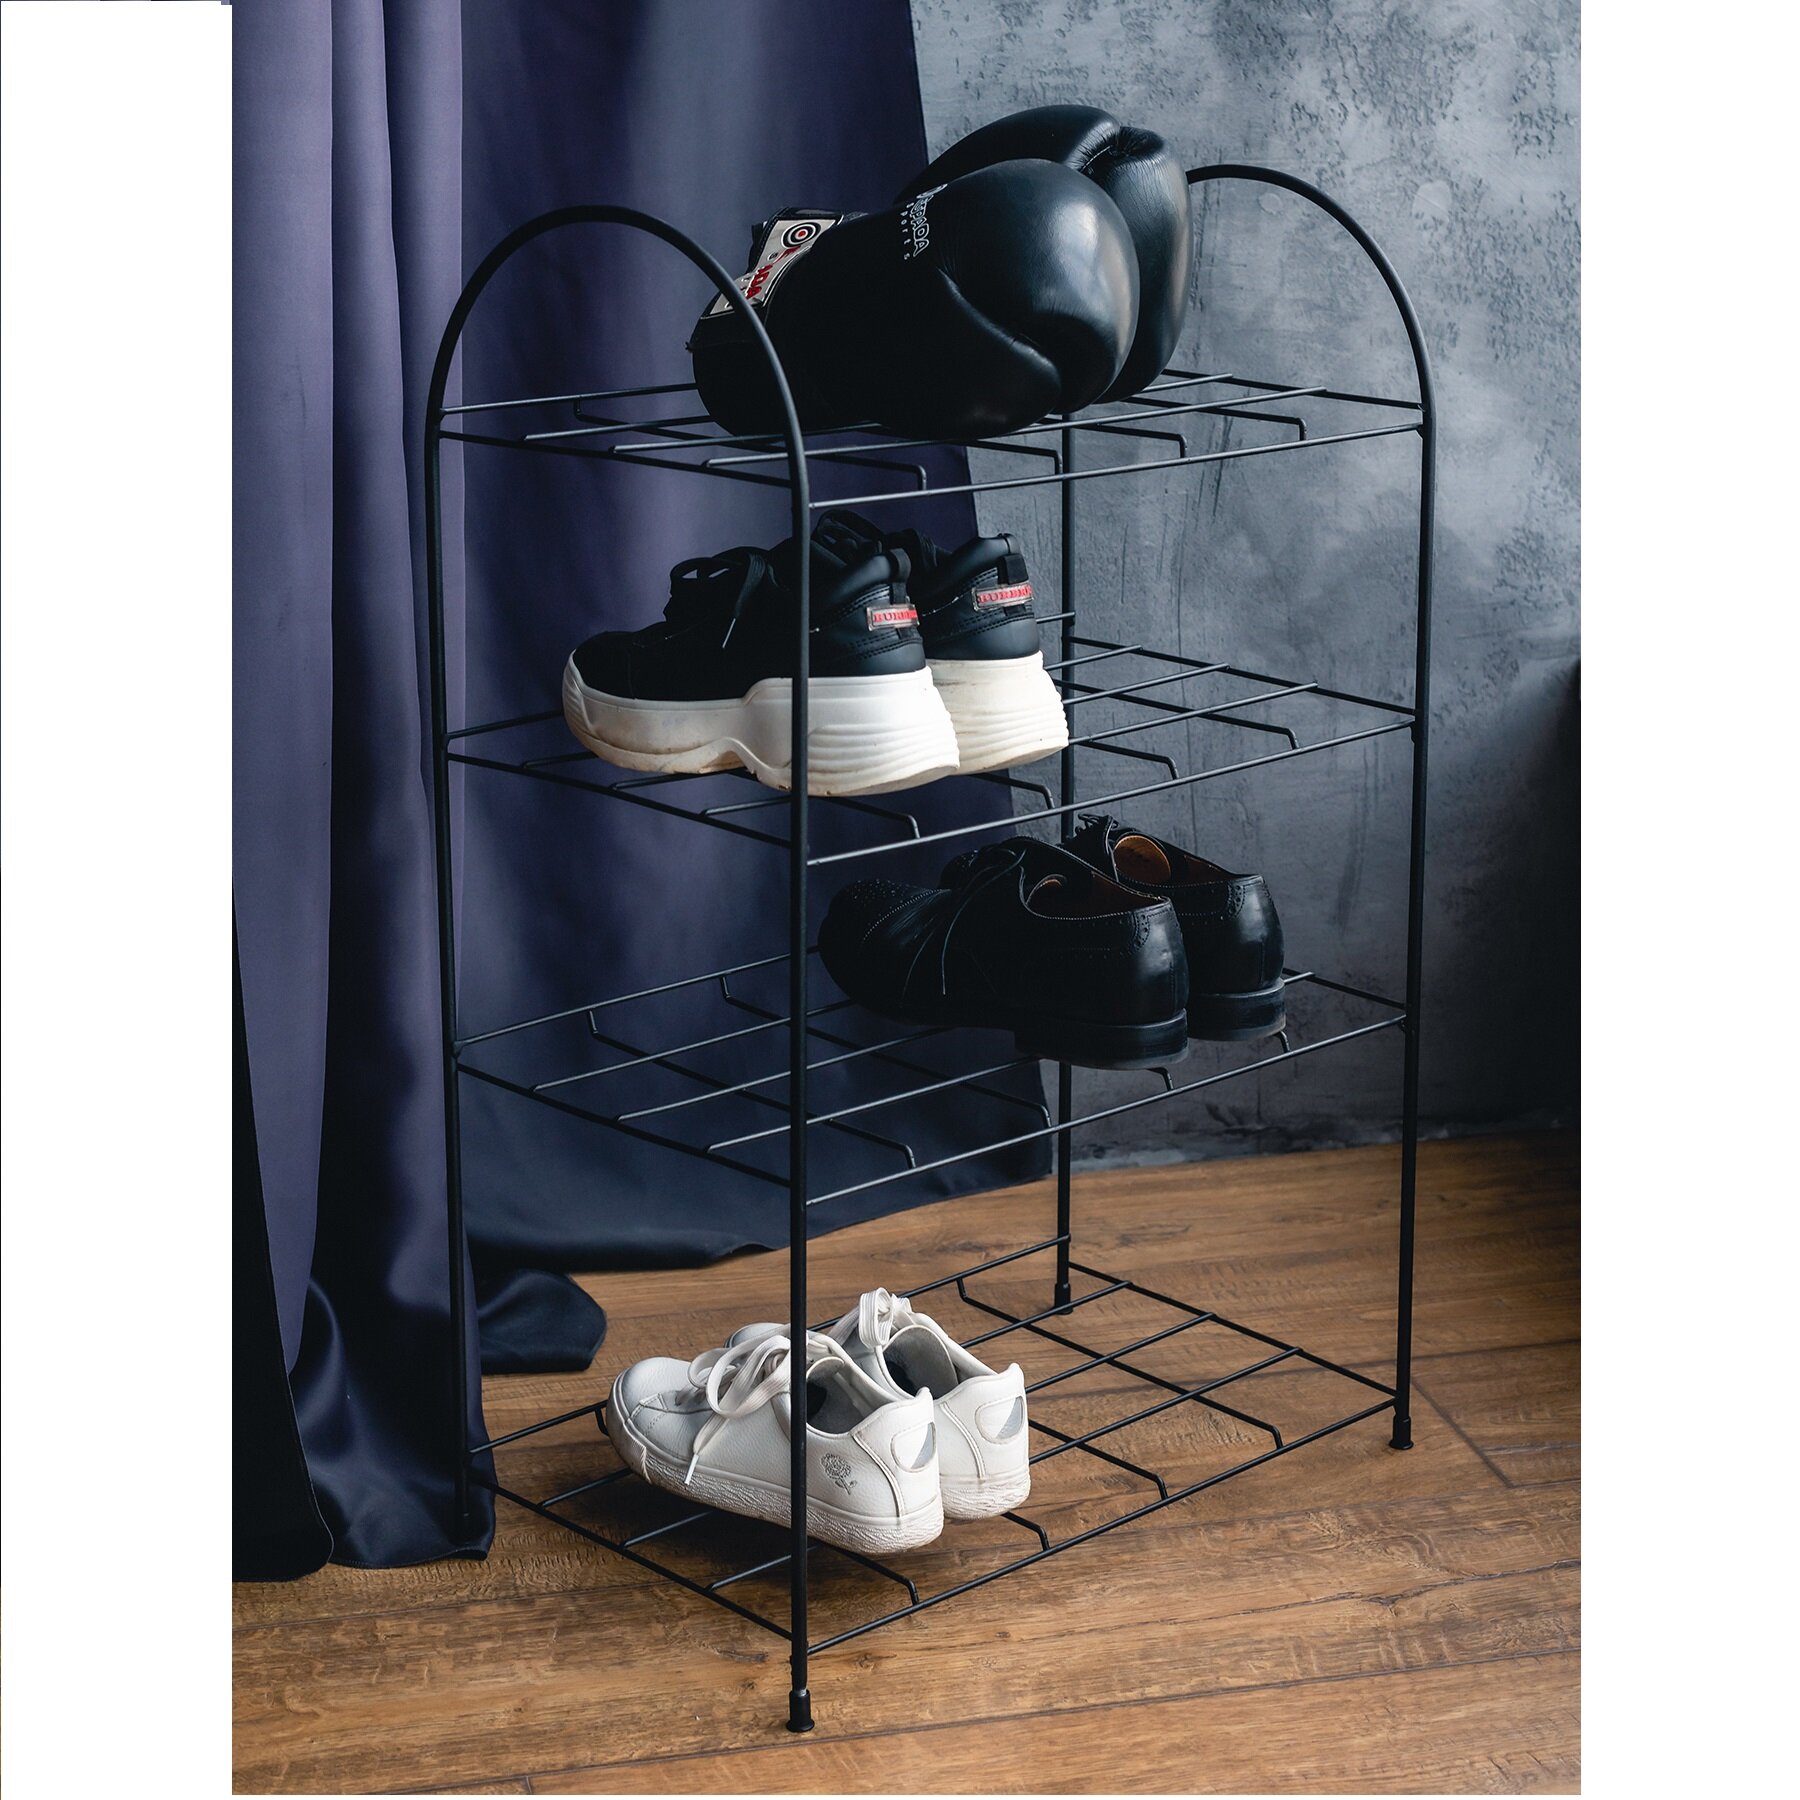 Обувница ilwi INT-W-PO-P-1-N/1 черная металлическая в стиле лофт, подарок на день рождения